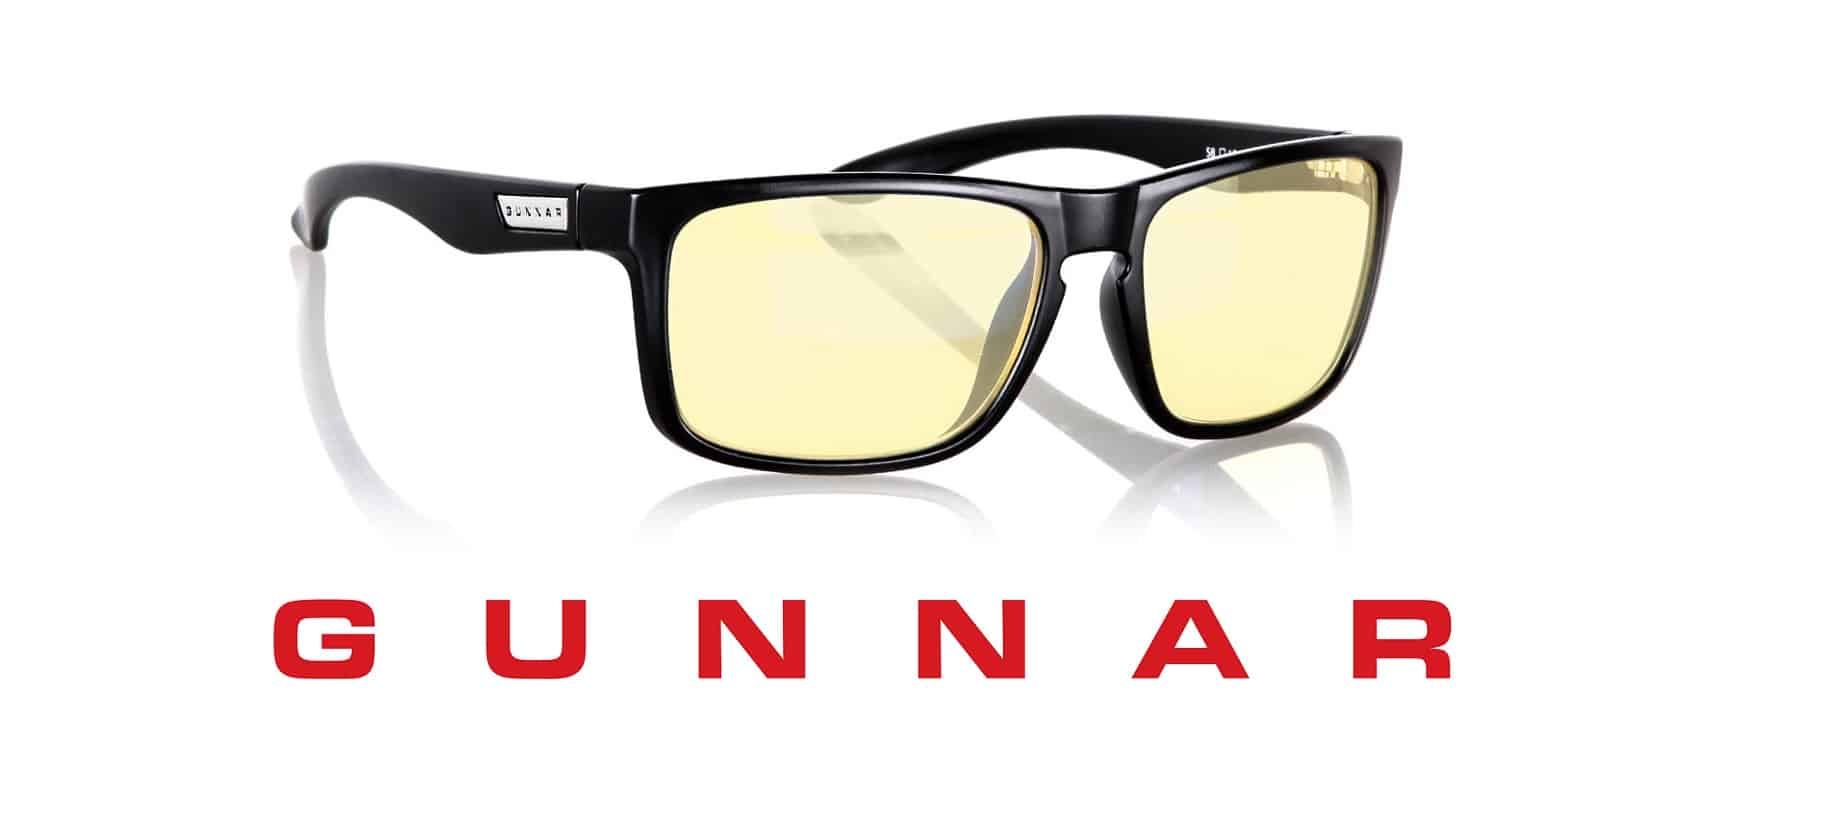 Contrer les effets de la fatigue visuelle avec les lunettes Gunnar